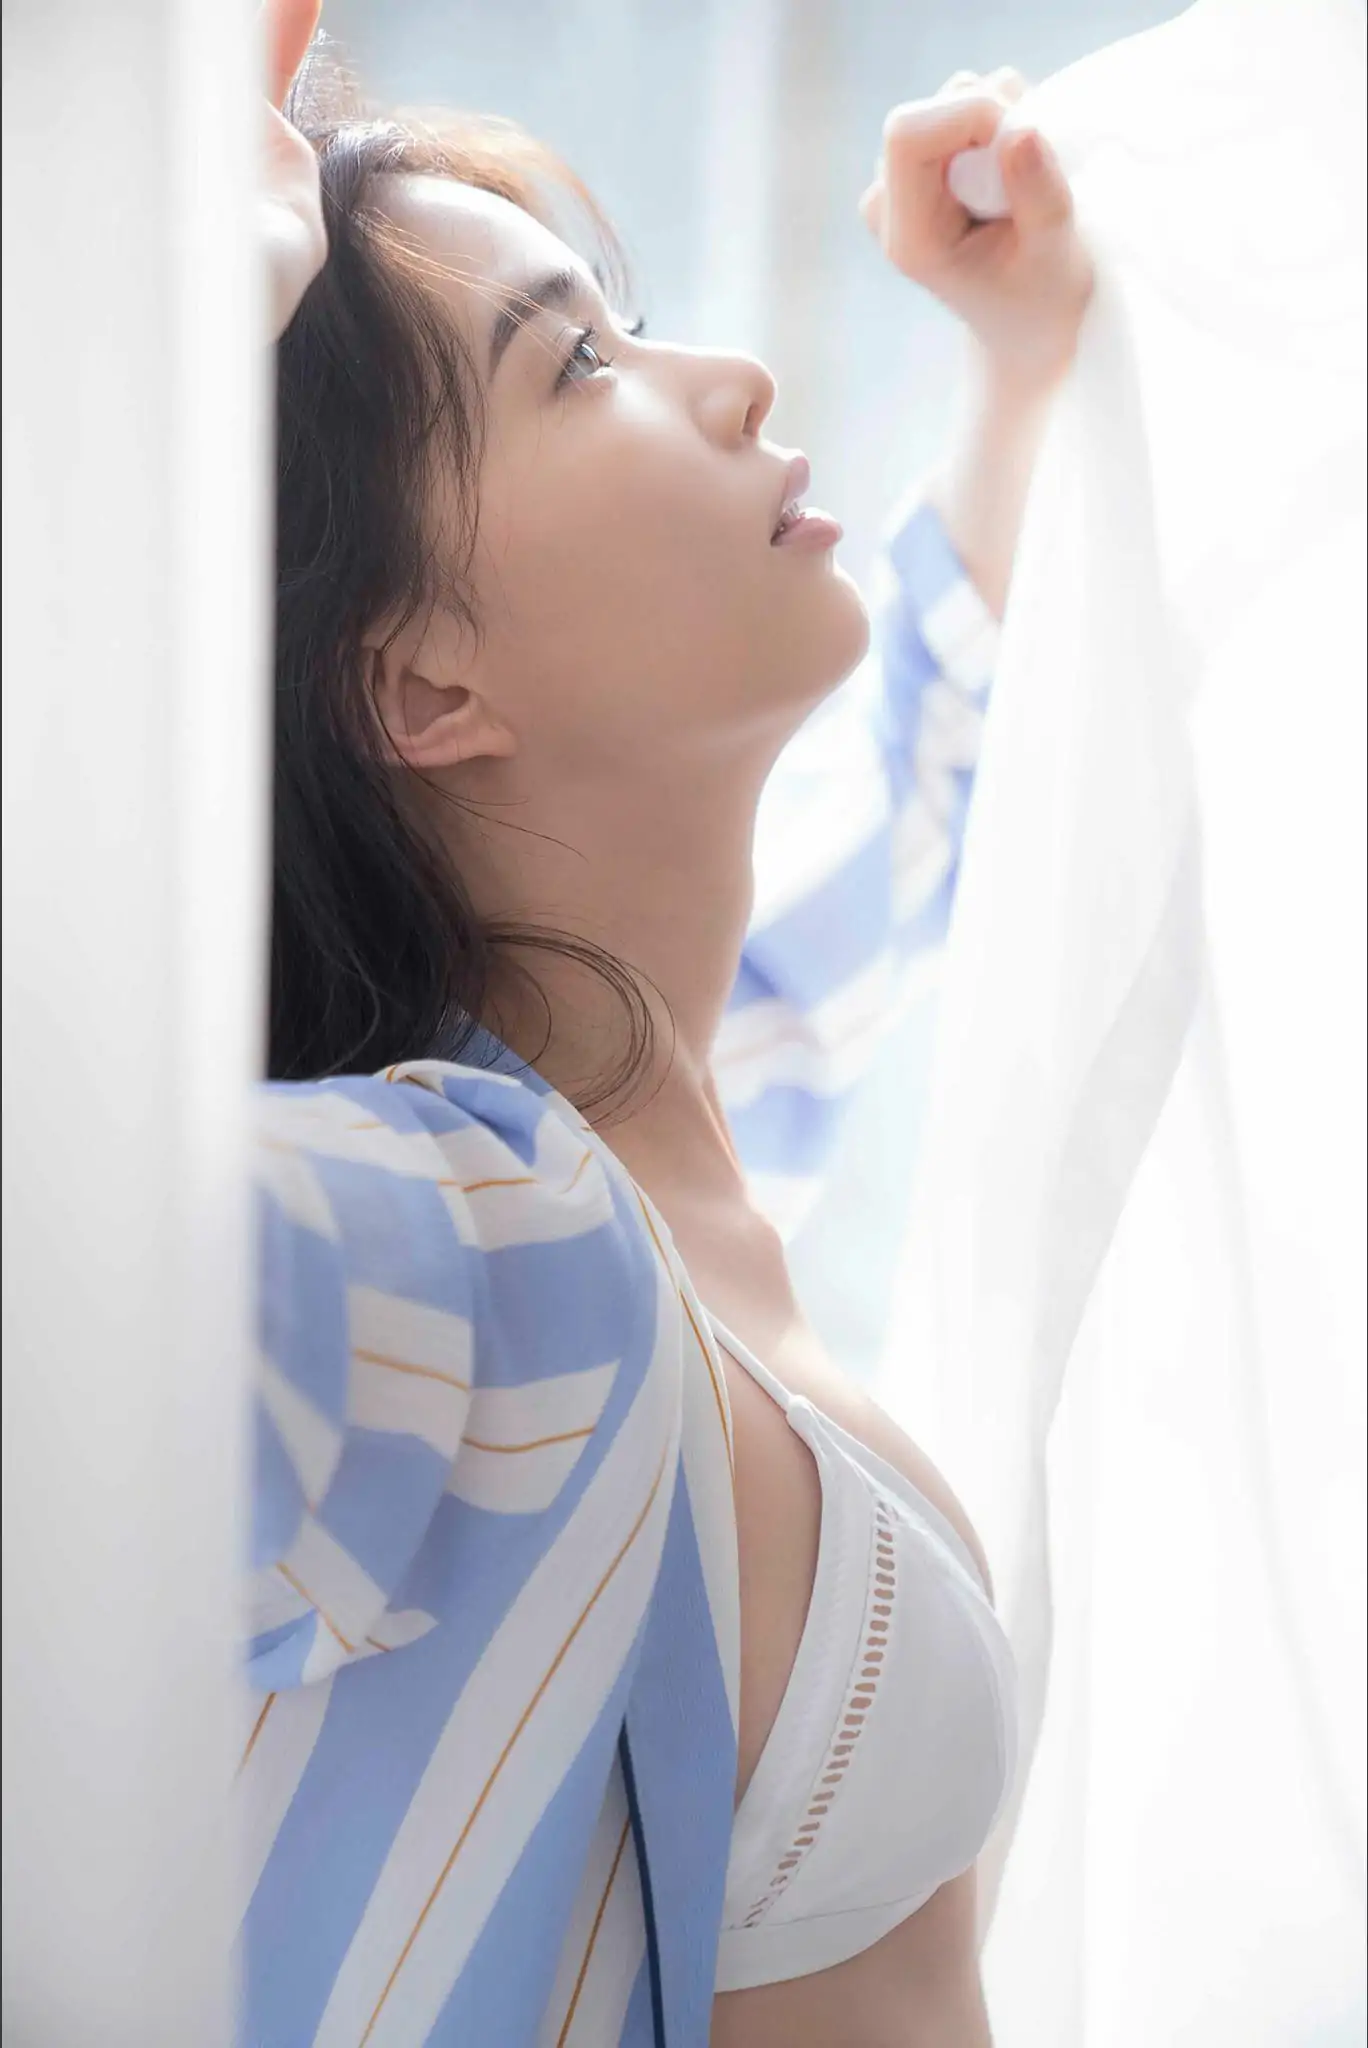 Riko Matsudaira 松平璃子 - Glossy body 艶めくボディ